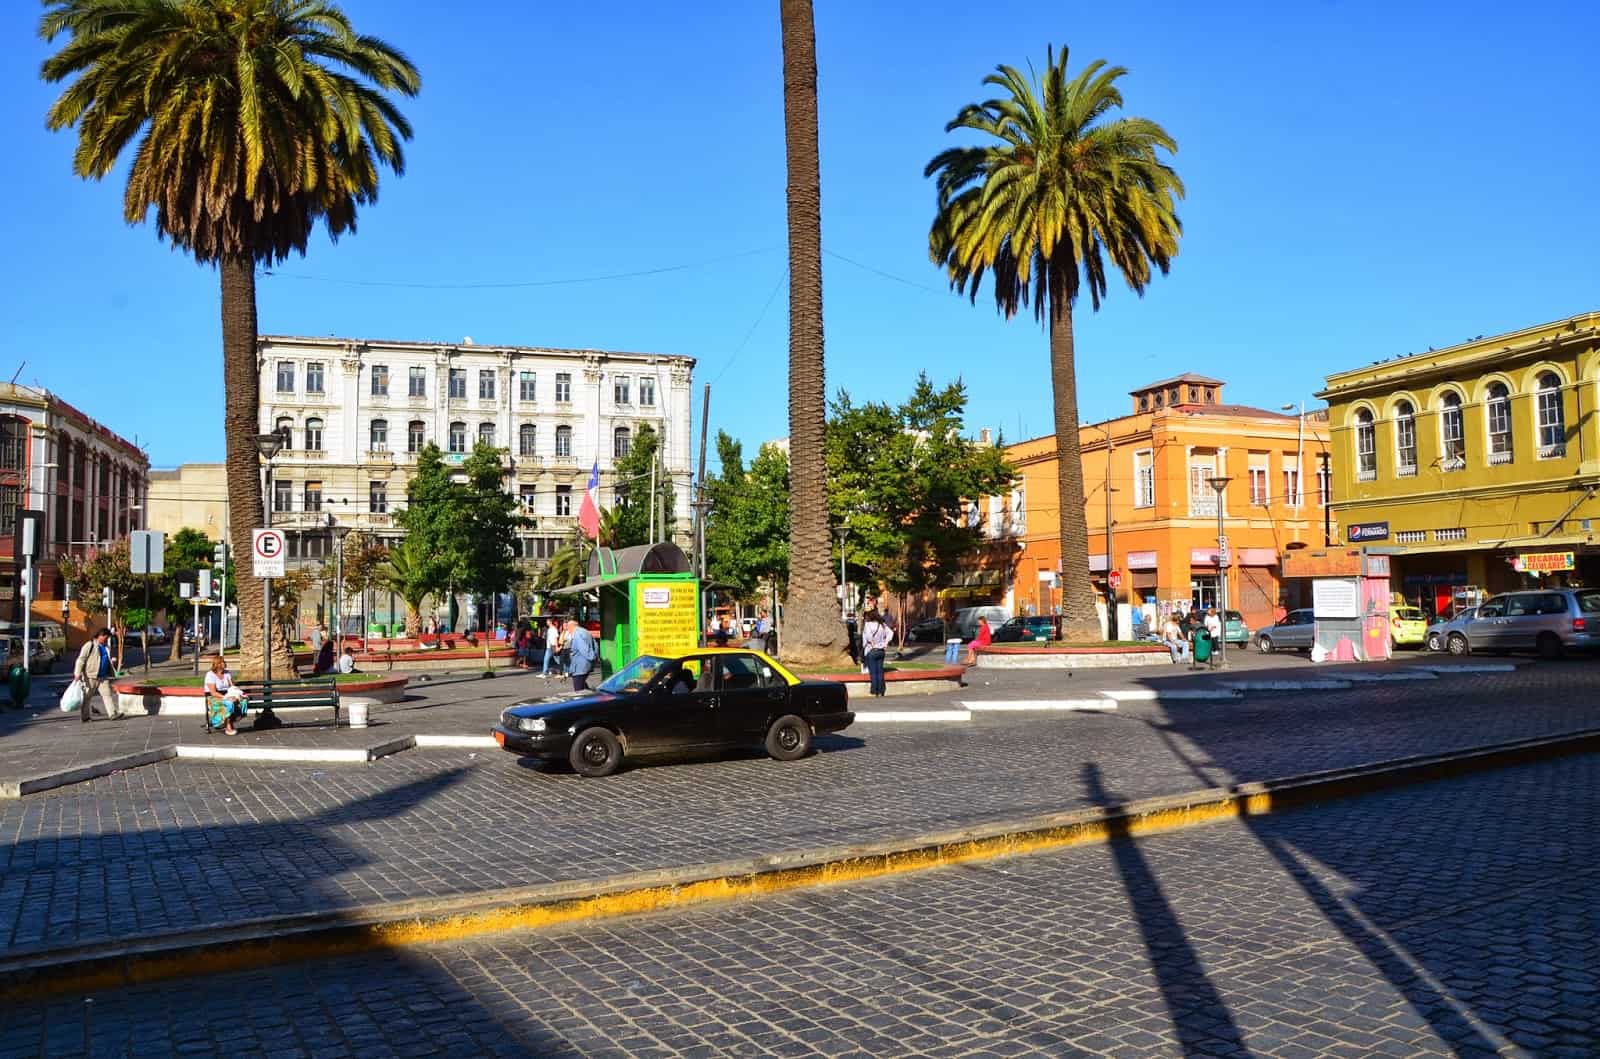 Plaza Echaurren in Valparaíso, Chile